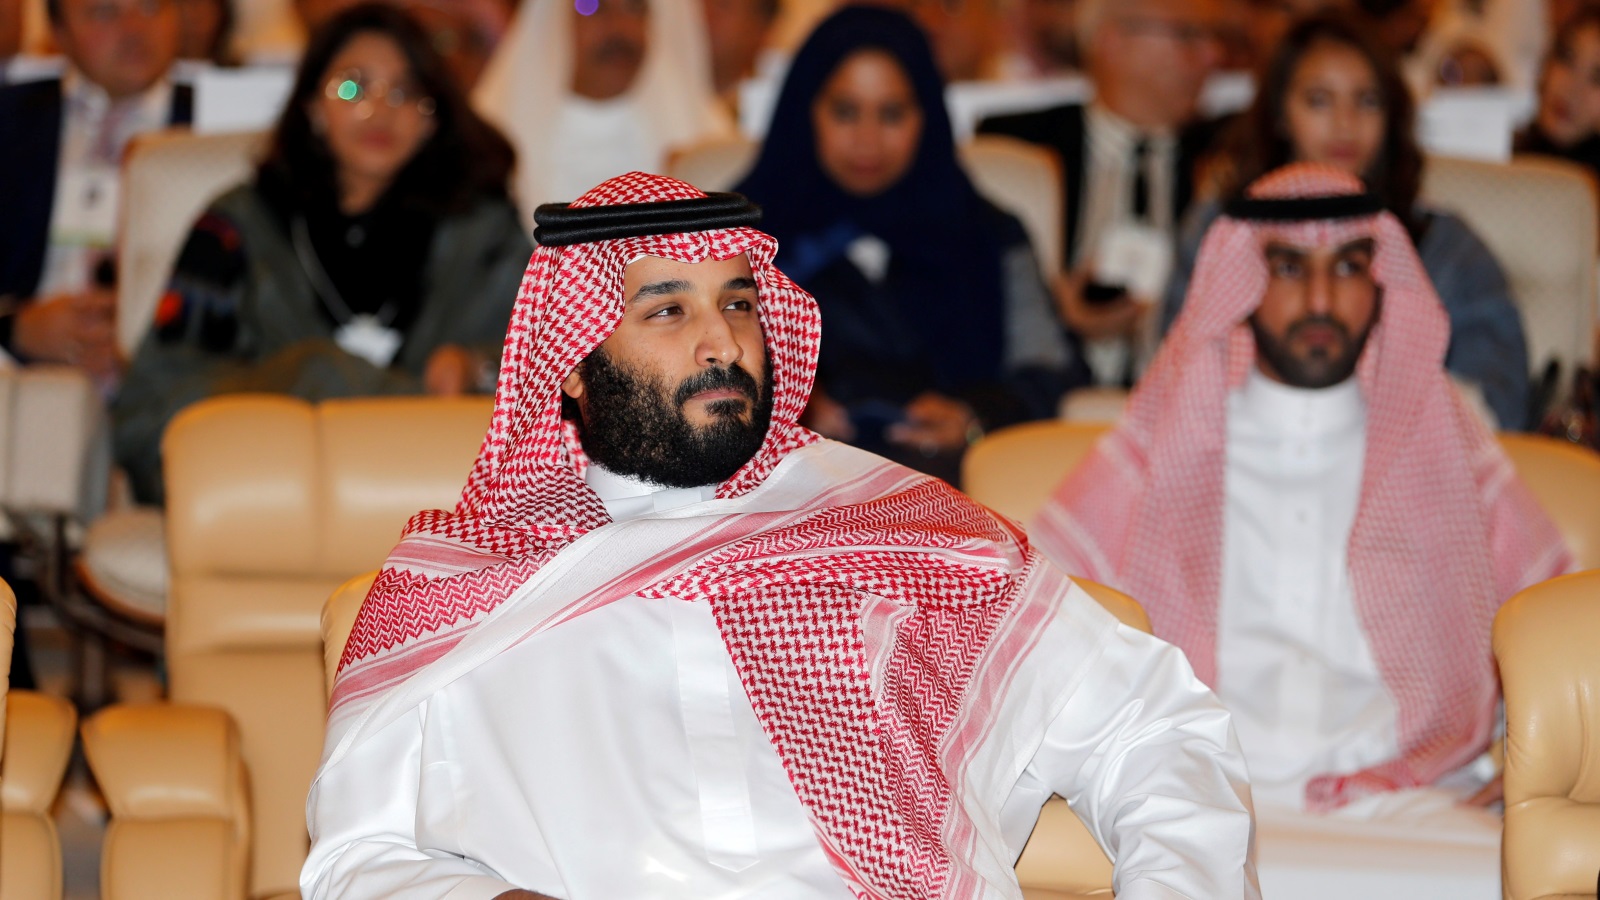 لا أدري كيف يمكنني الفخر بكوني عربيًا ويحمل نفس لغة هذا الذي يُدعى محمد بن سلمان الأمير السعودي الذي اشترى يختًا بـ 550 مليون يورو من أجل أن يقضي إجازته!